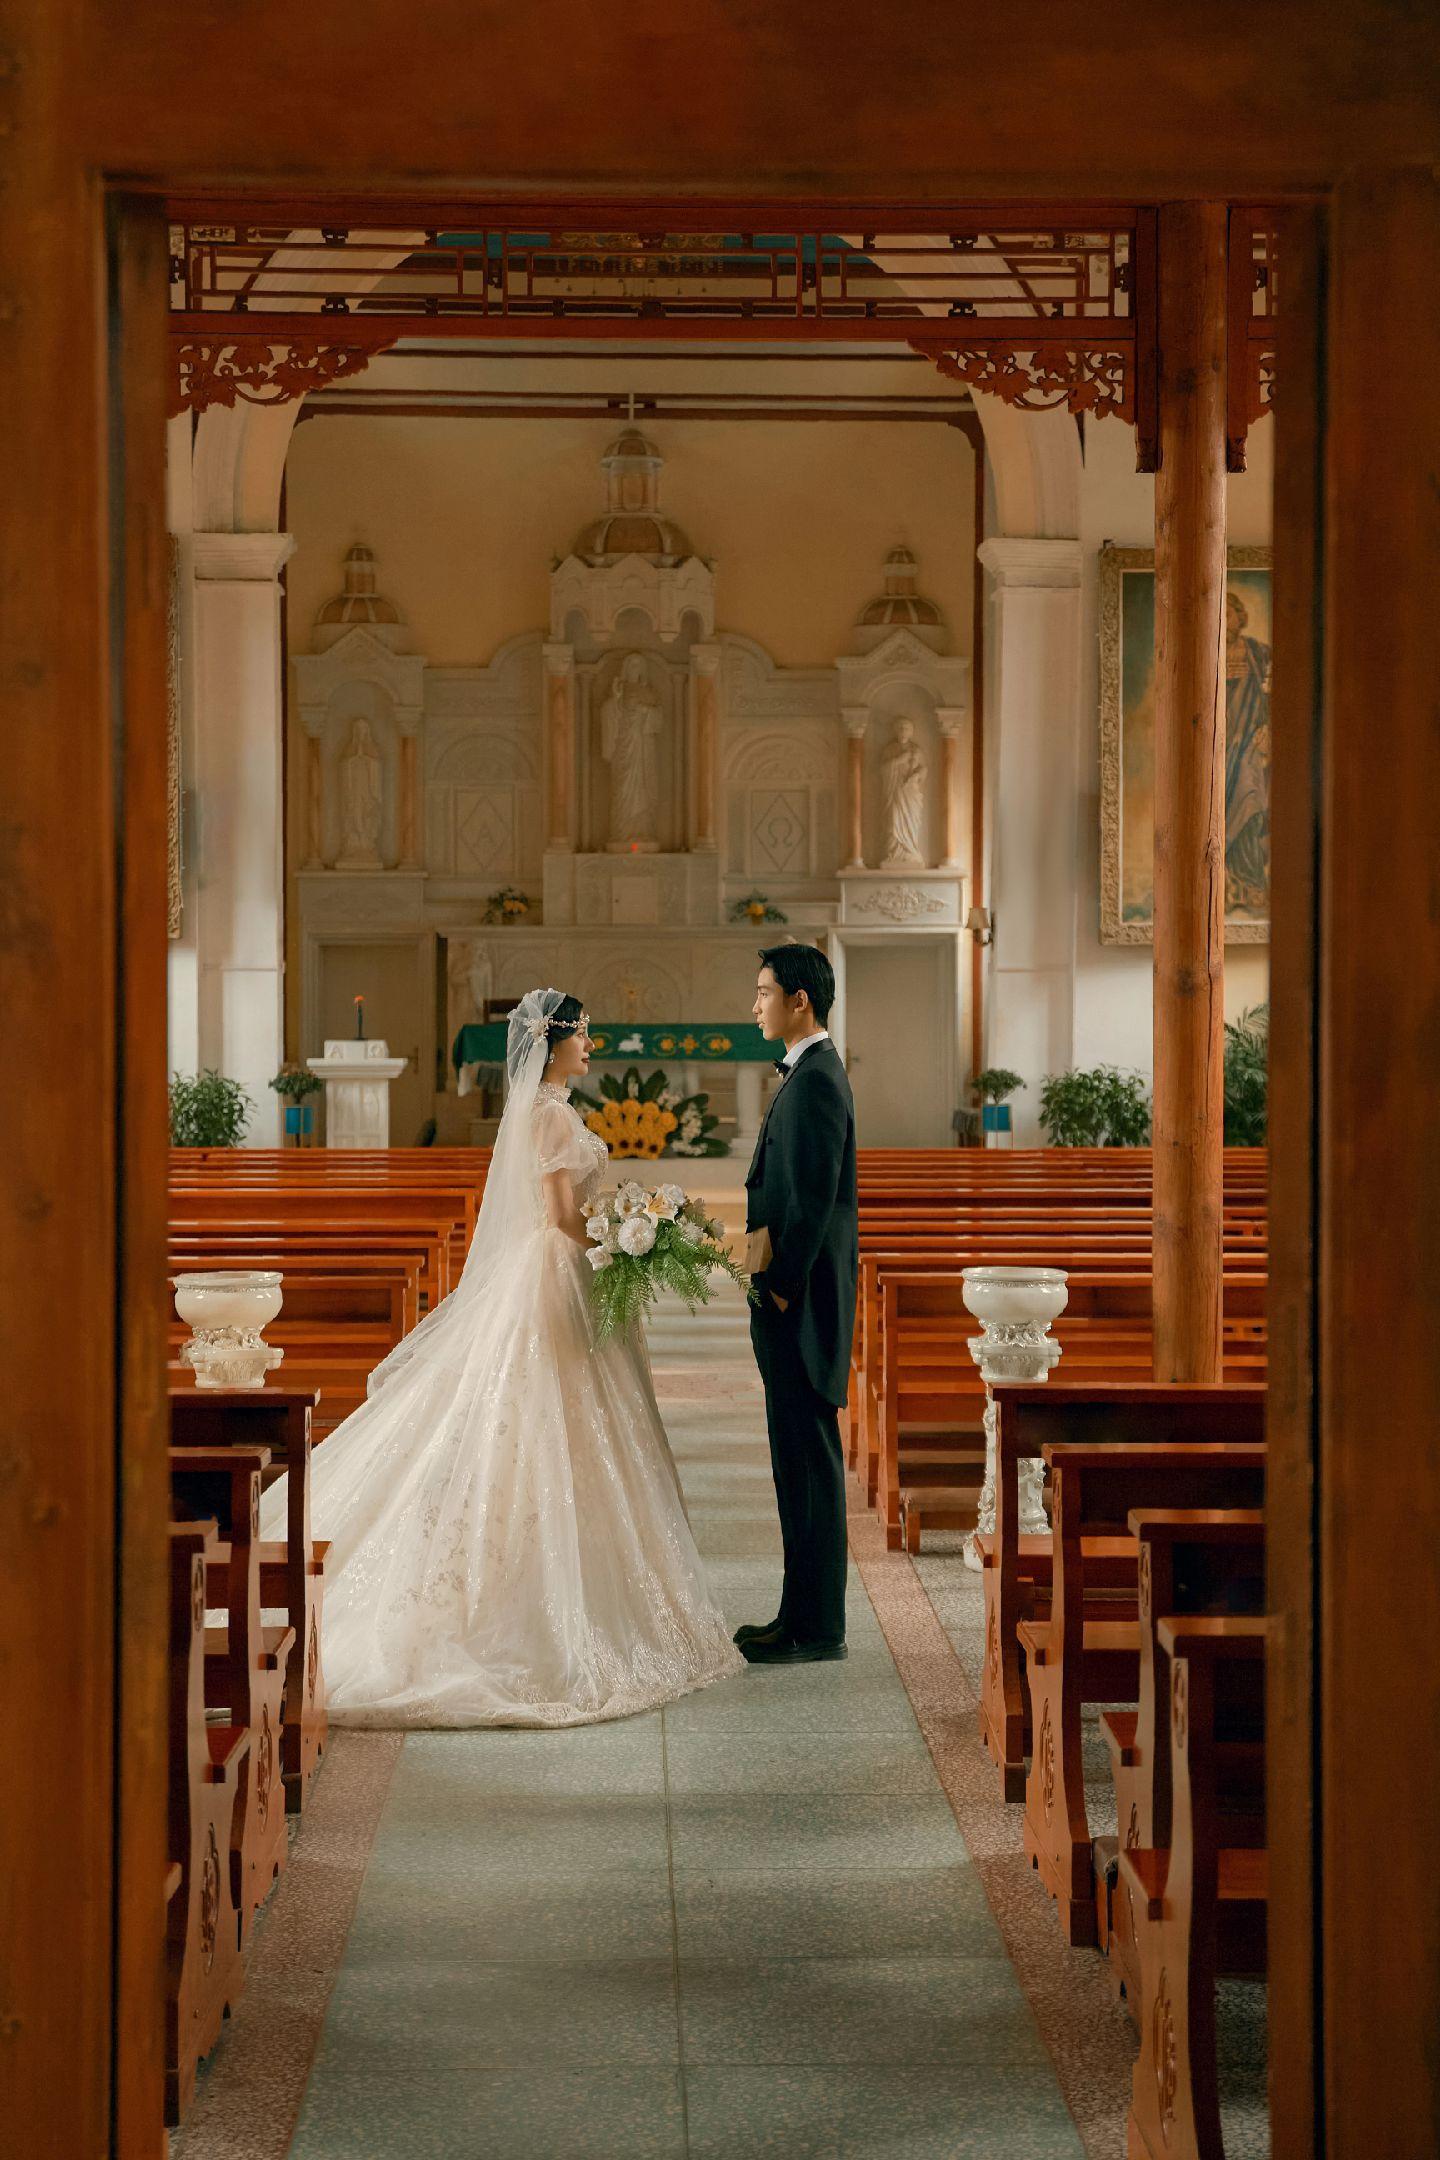 在南阳教堂里面拍的教堂主题婚纱照被朋友圈夸爆了